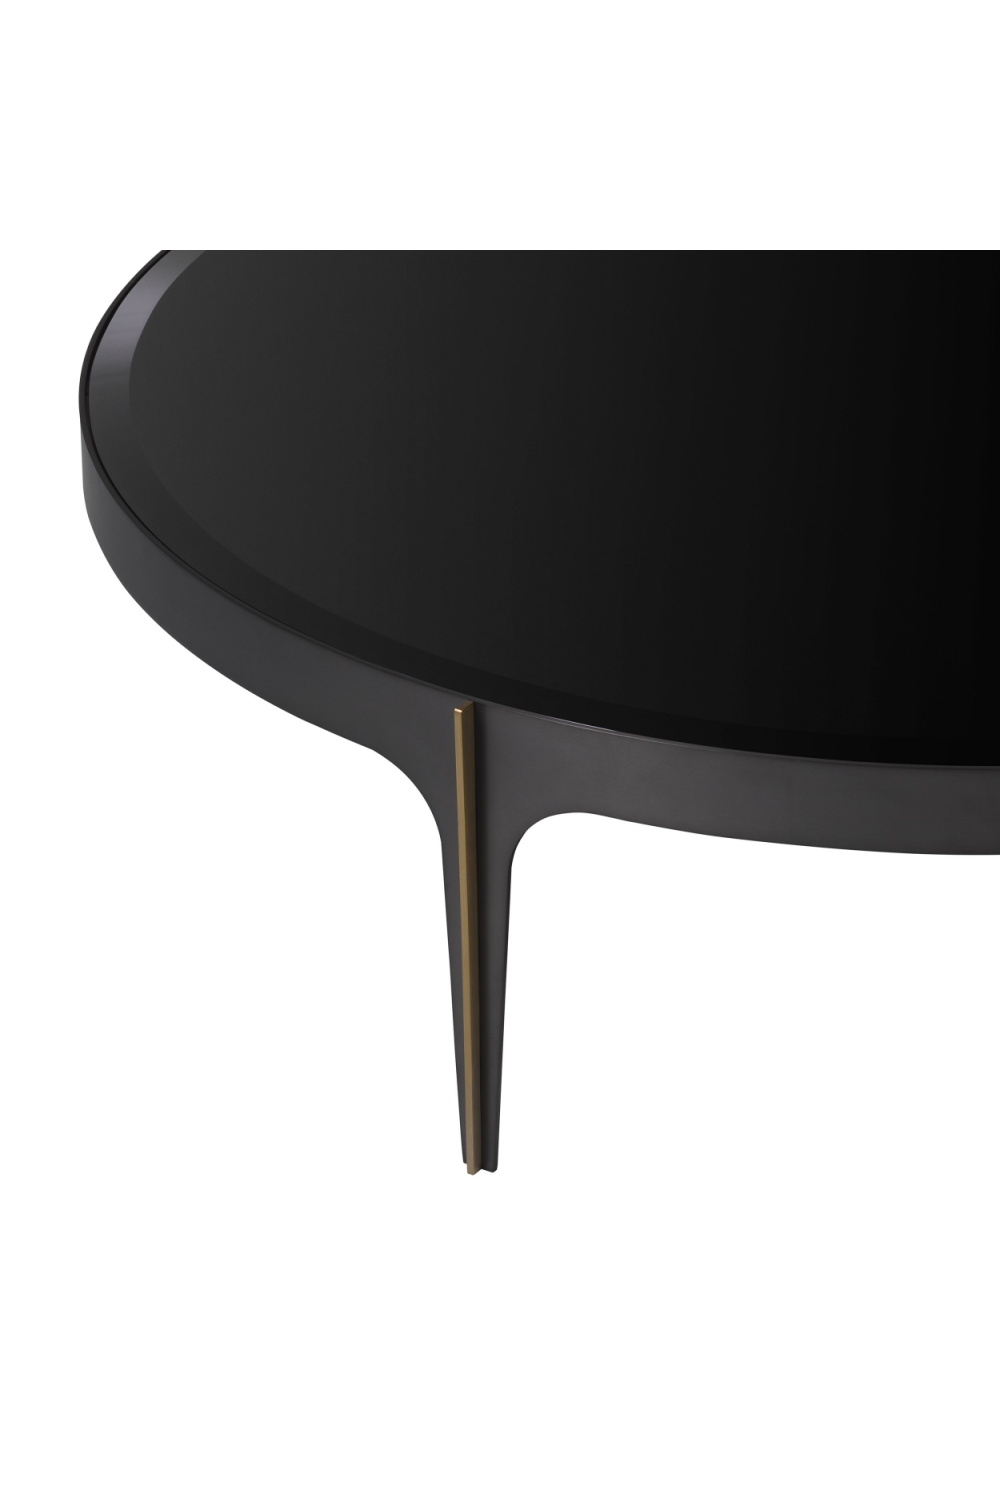 Bronze Frame Black Coffee Table | Eichholtz Artemisa - L | OROA